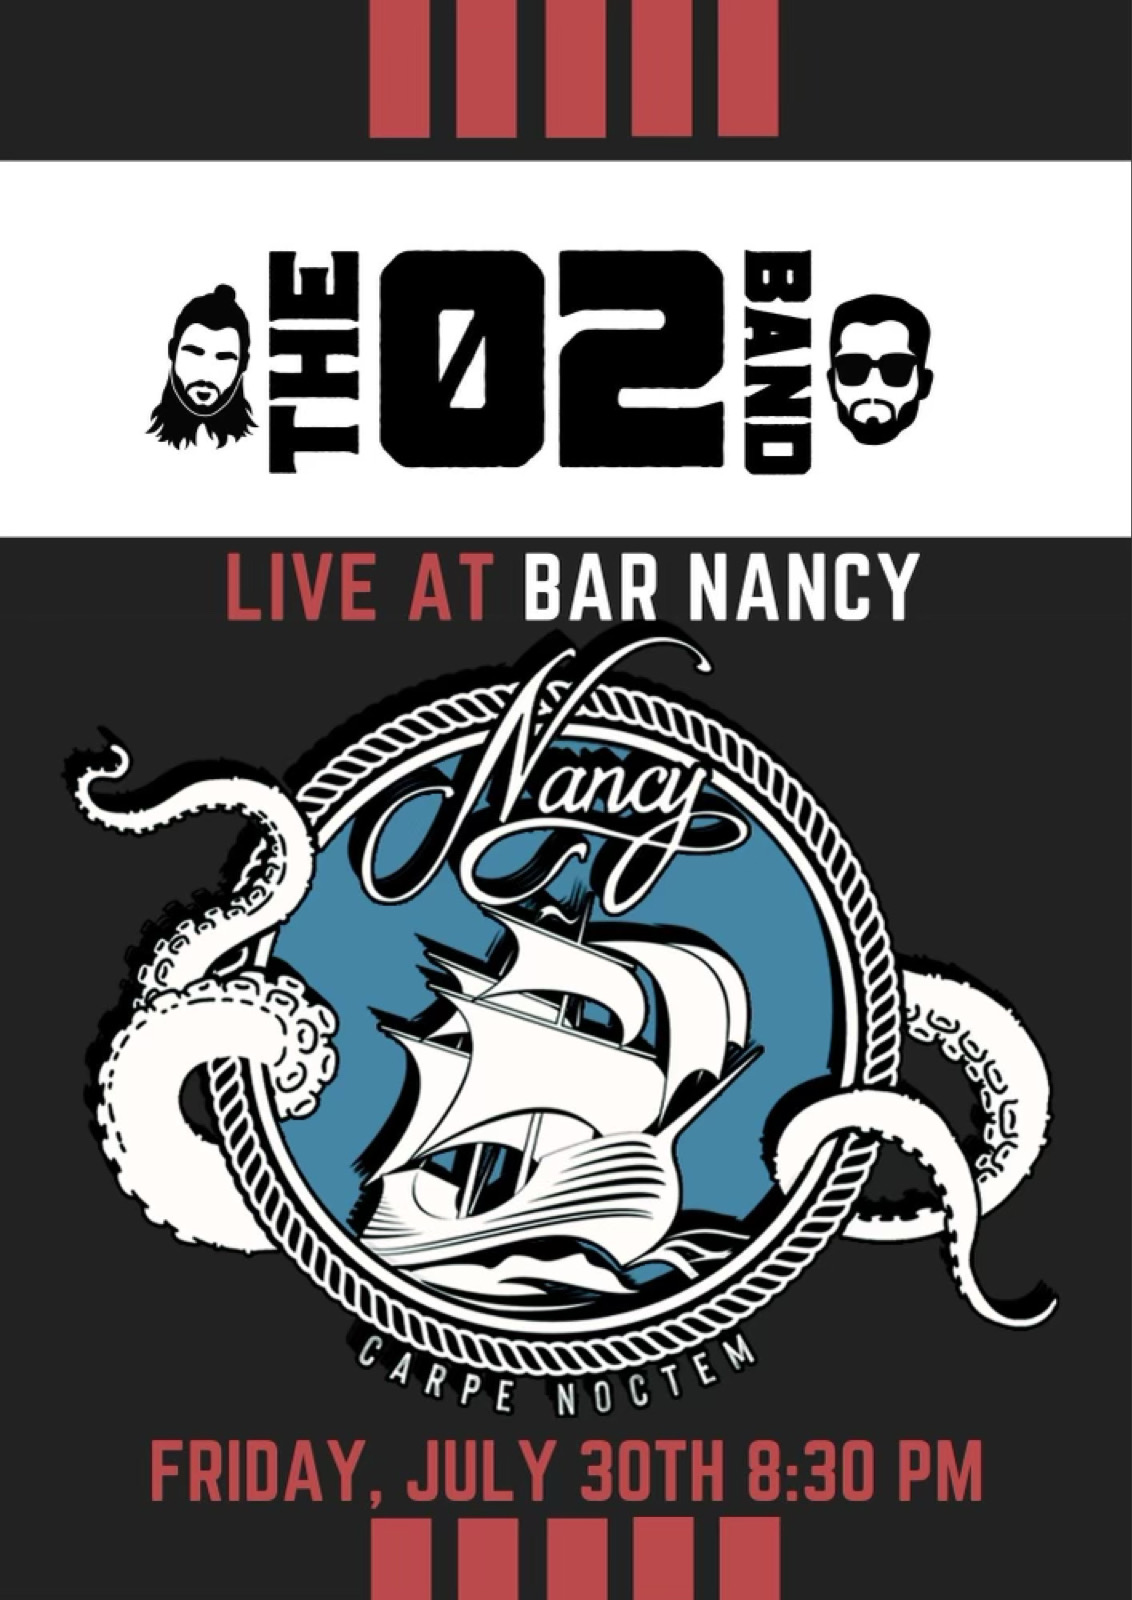 The 02 Band at Bar Nancy Friday July 30th 8:30PM